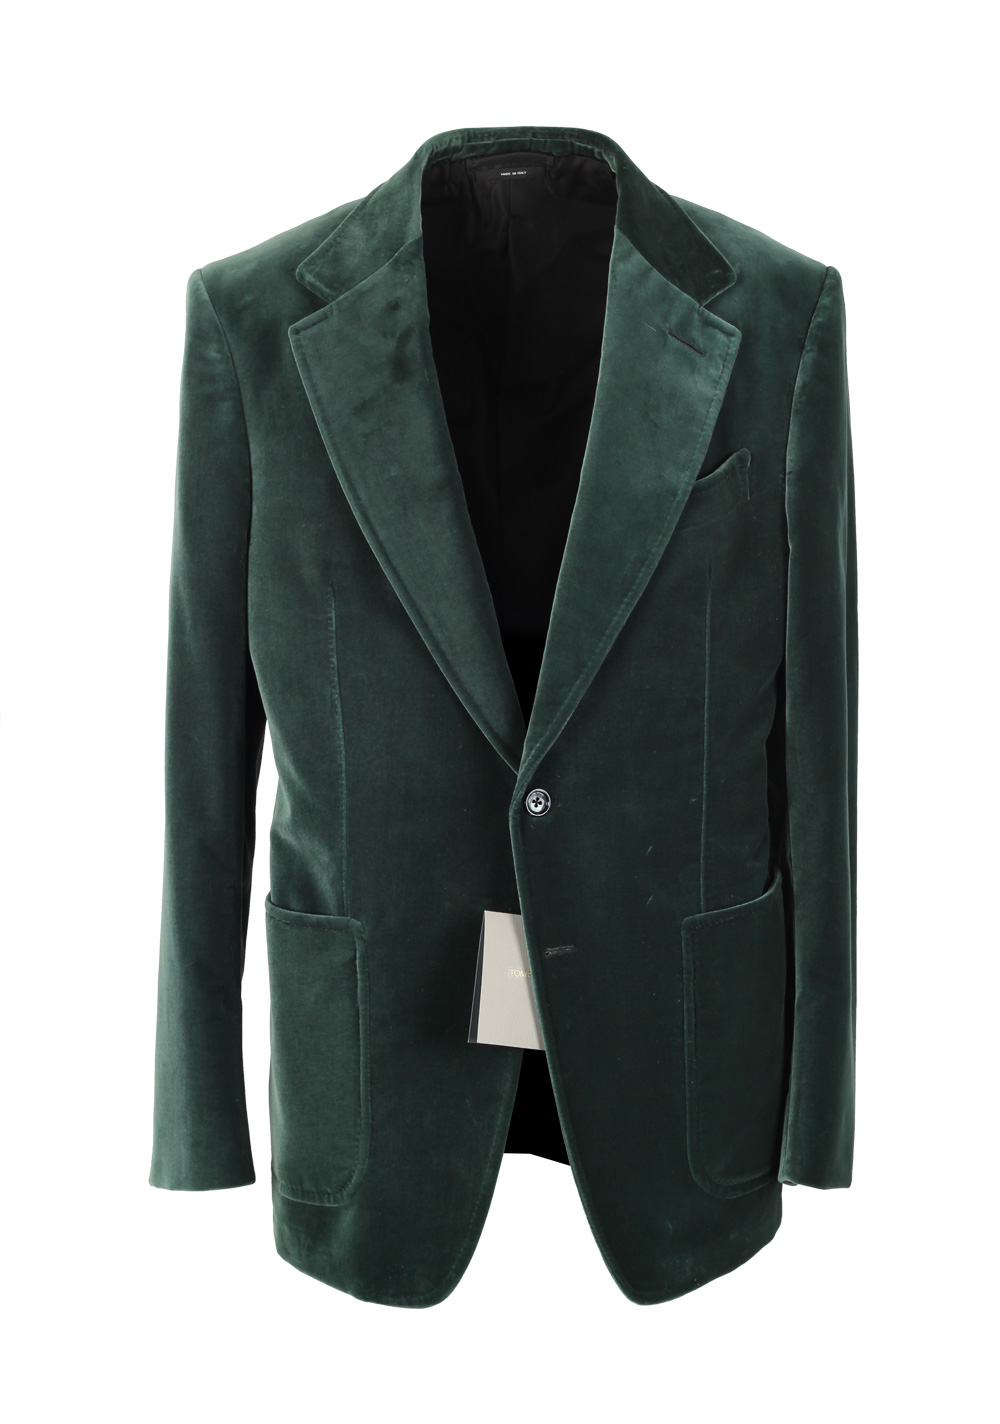 TOM FORD Shelton Velvet Green Sport Coat Size 54 / 44R Cotton | Costume ...